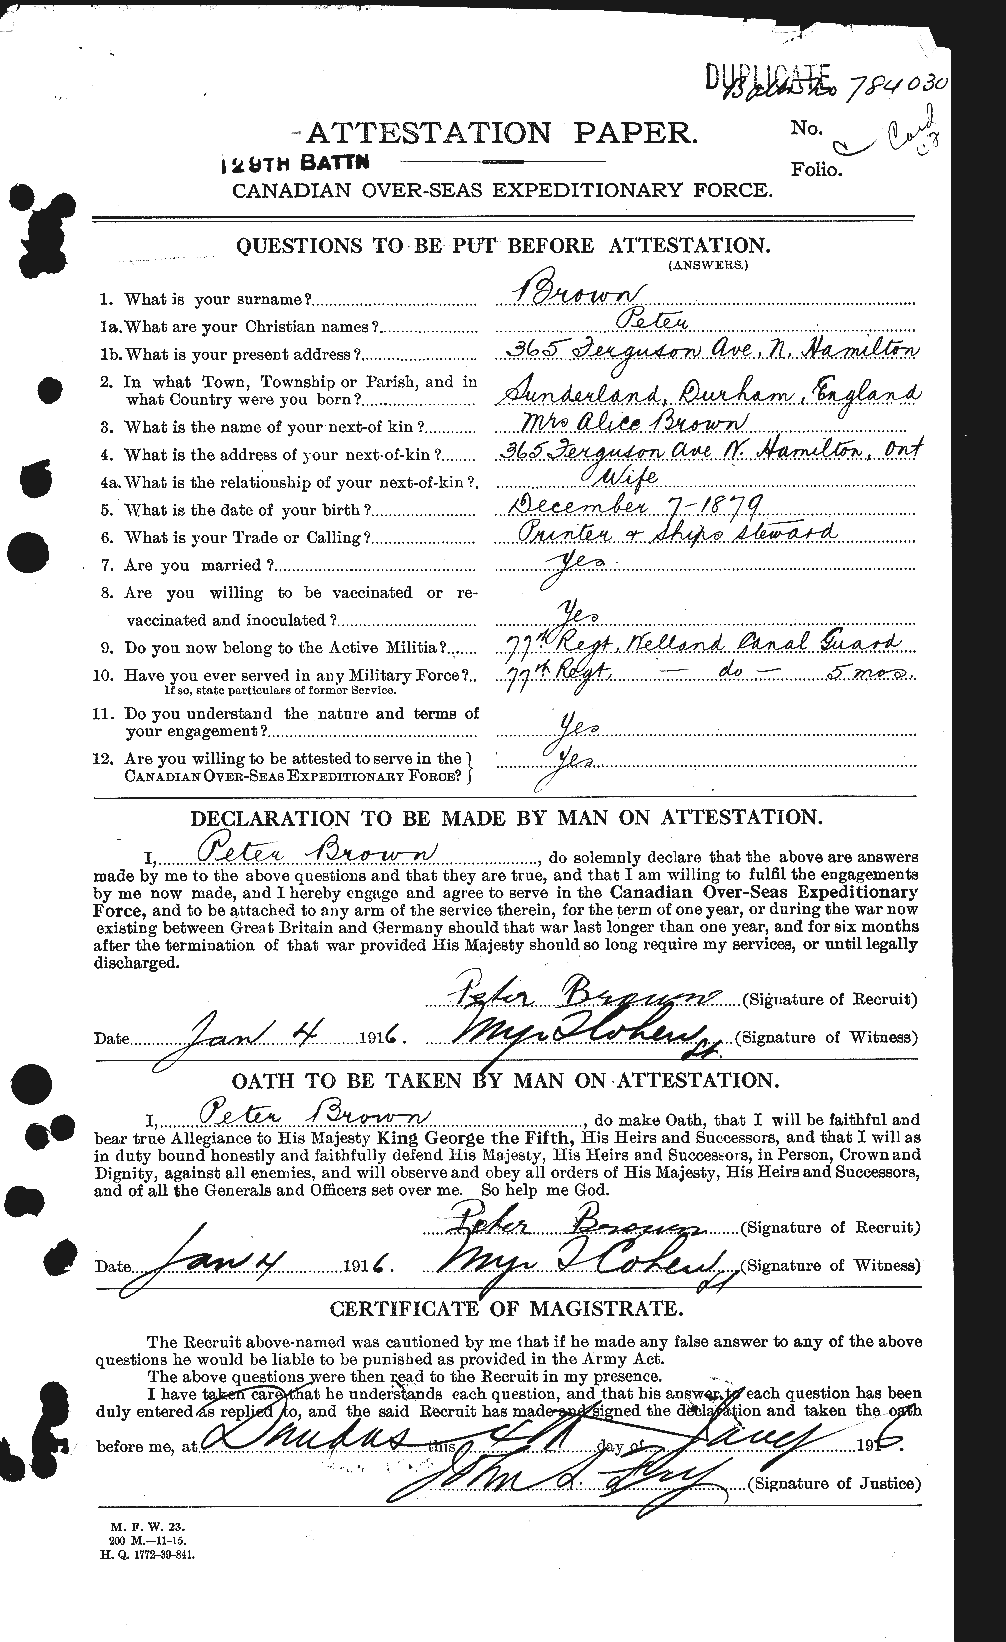 Dossiers du Personnel de la Première Guerre mondiale - CEC 267199a